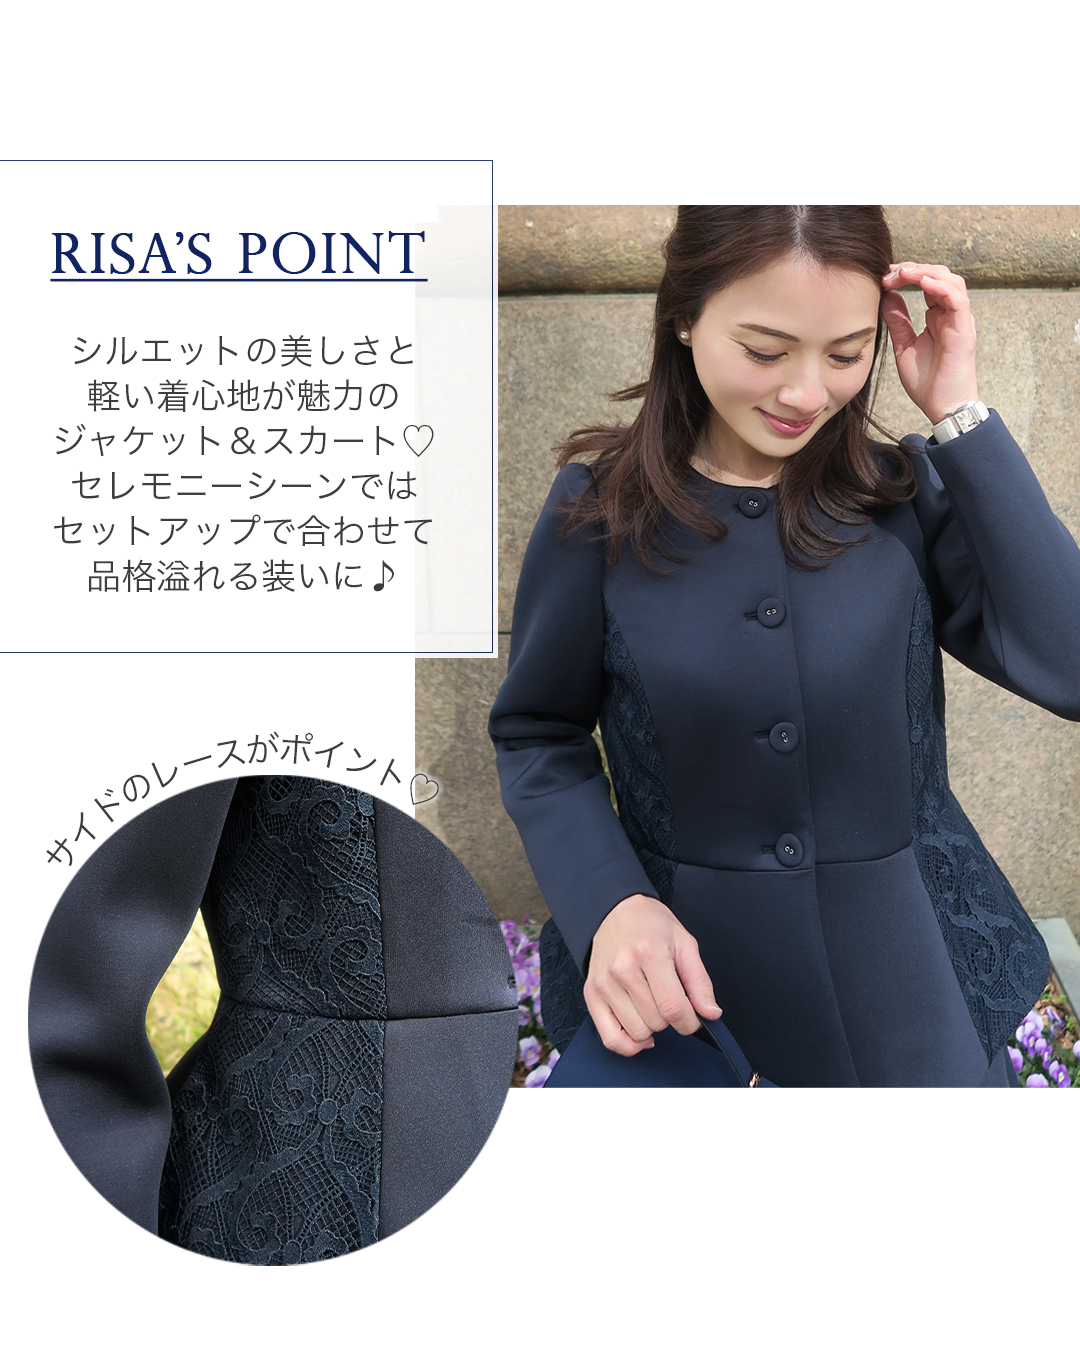 RISA'S POINT
シルエットの美しさと軽い着心地が魅力のジャケット＆スカート。セレモニーシーンではセットアップで合わせて品格溢れる装いに